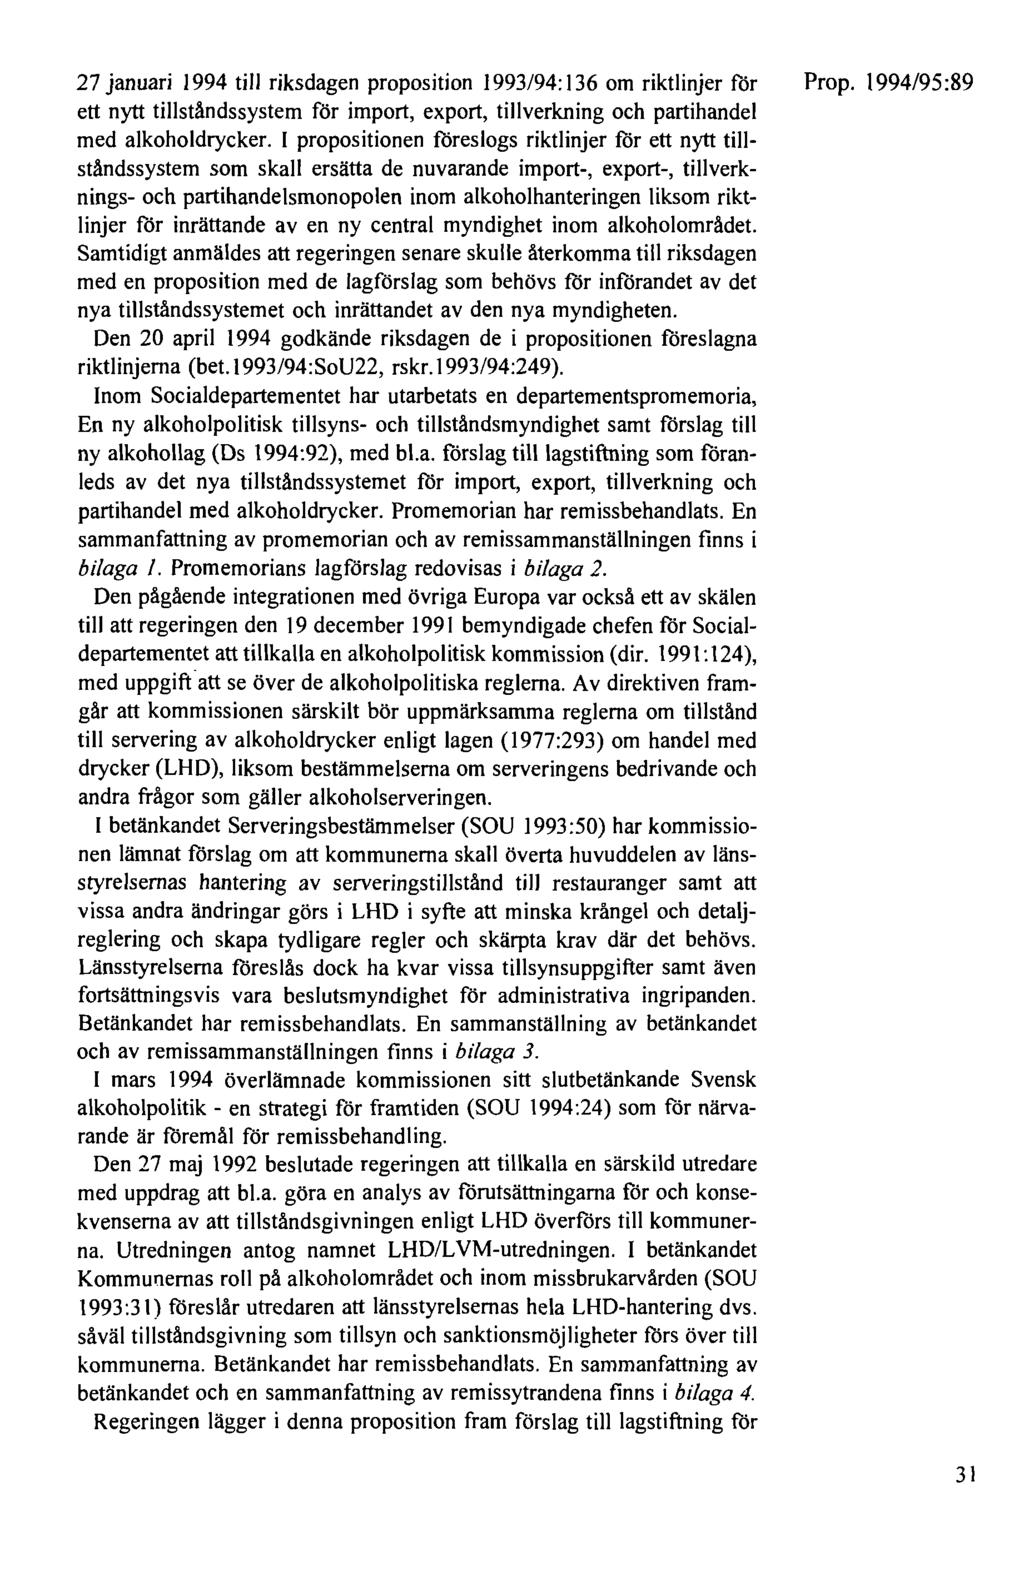 27 januari 1994 till riksdagen proposition 1993/94: 136 om riktlinjer för ett nytt tillståndssystem för import, export, tillverkning och partihandel med alkoholdrycker.